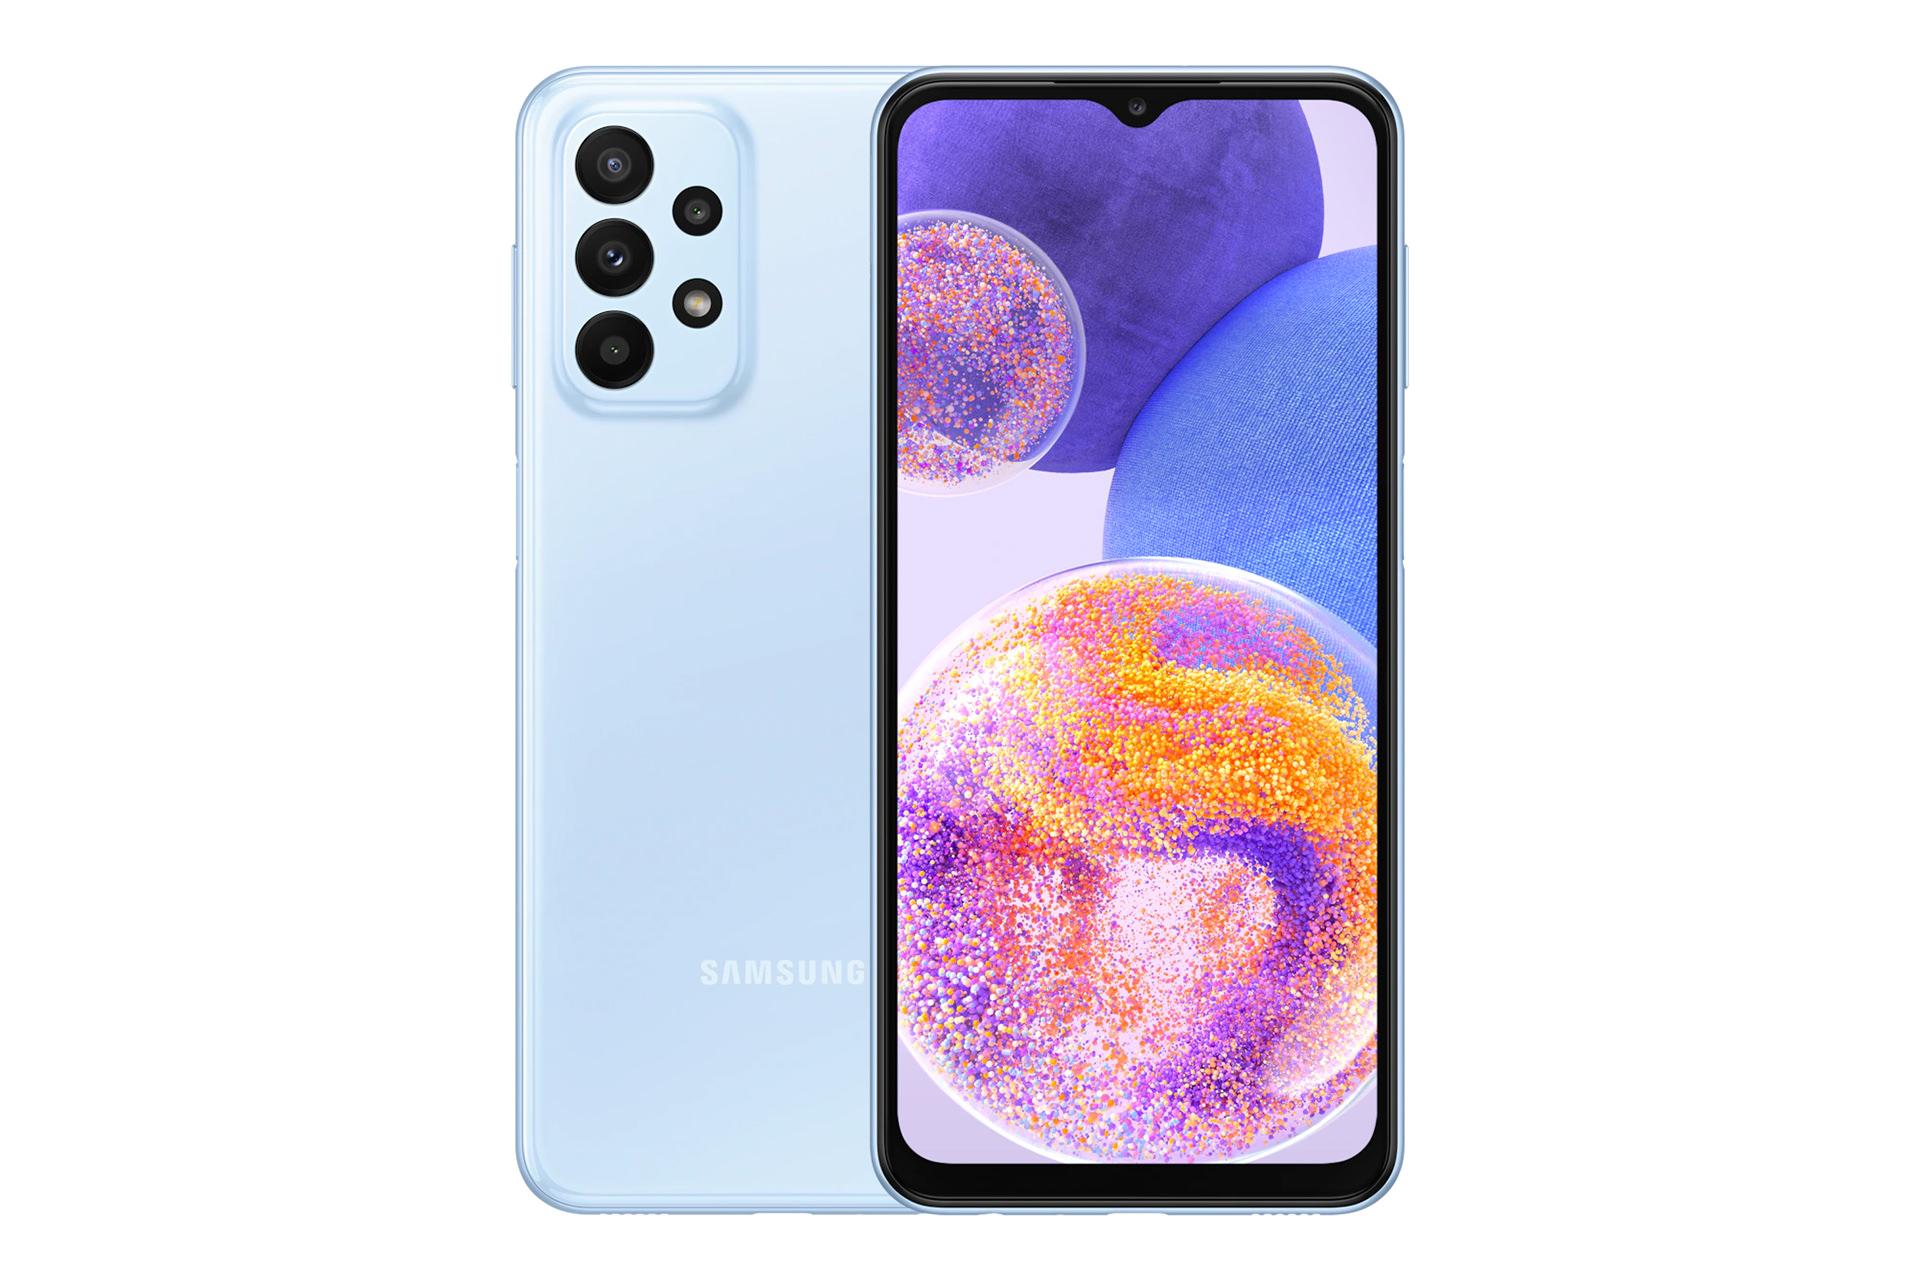 نمای کلی گوشی موبایل گلکسی A23 سامسونگ / Samsung Galaxy A23 با نمایشگر روشن و نمایش لوگو و دوربین های پنل پشت رنگ آبی